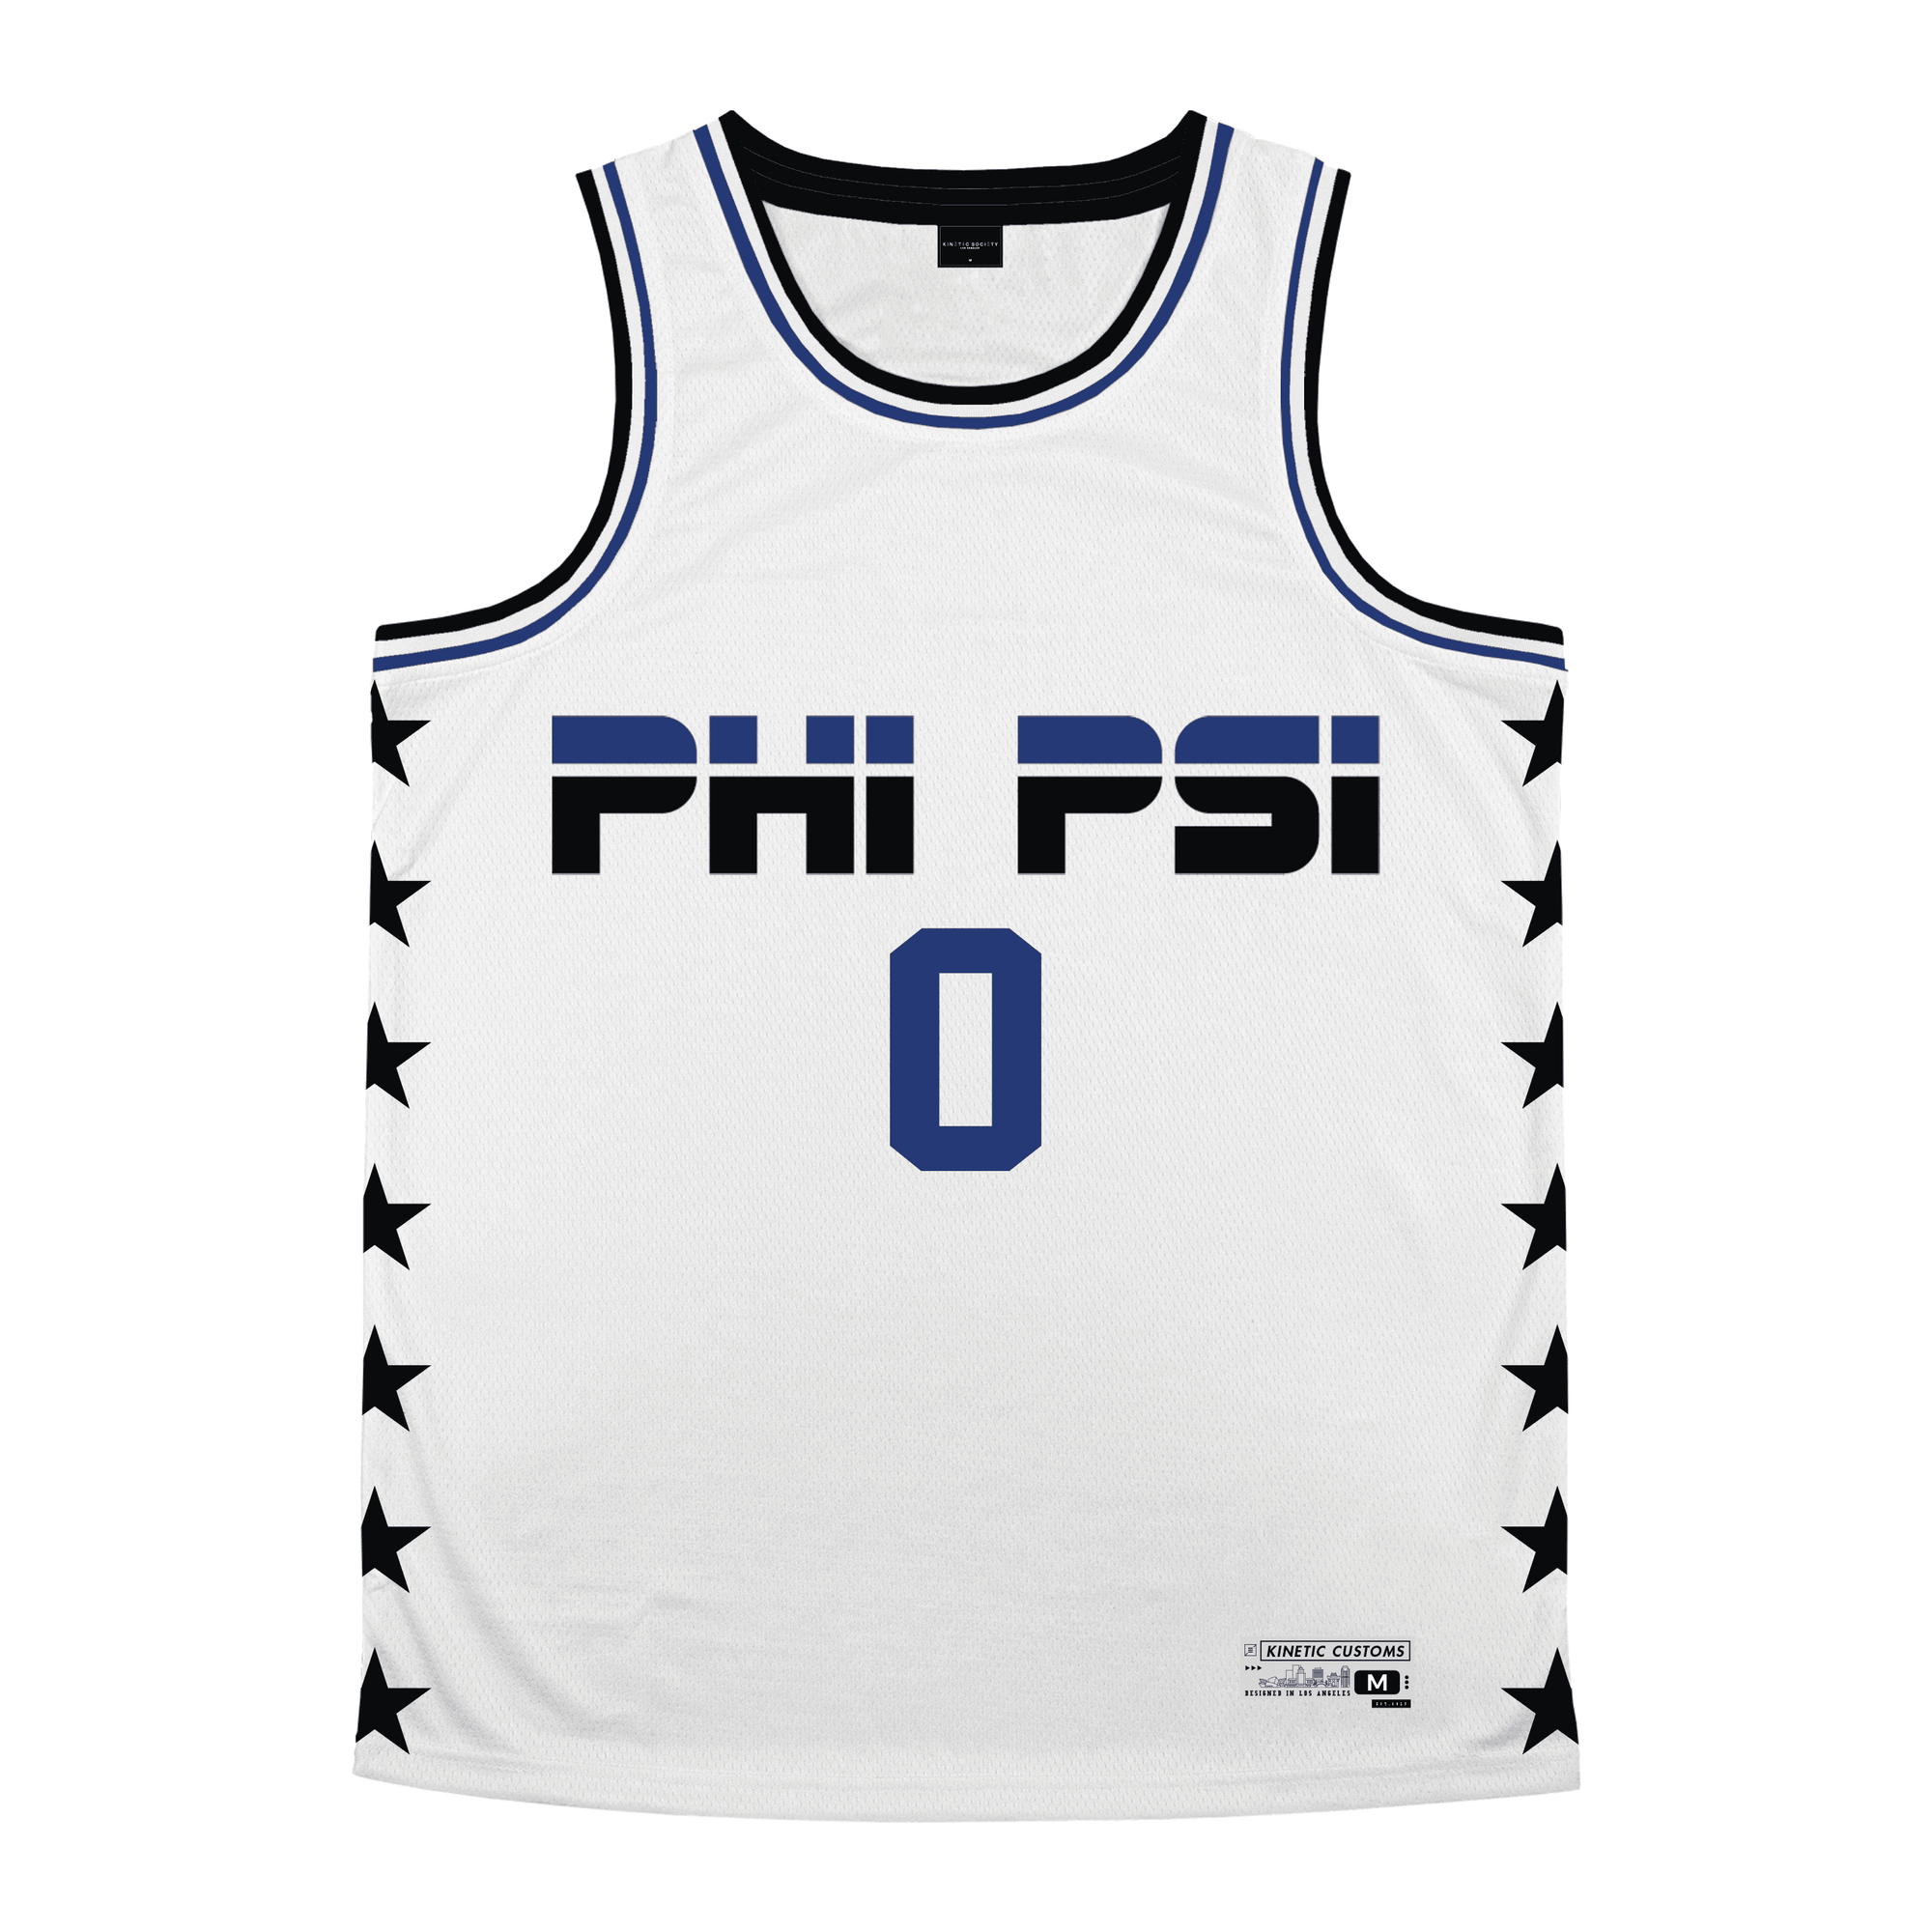 Phi Kappa Psi - Black Star Basketball Jersey